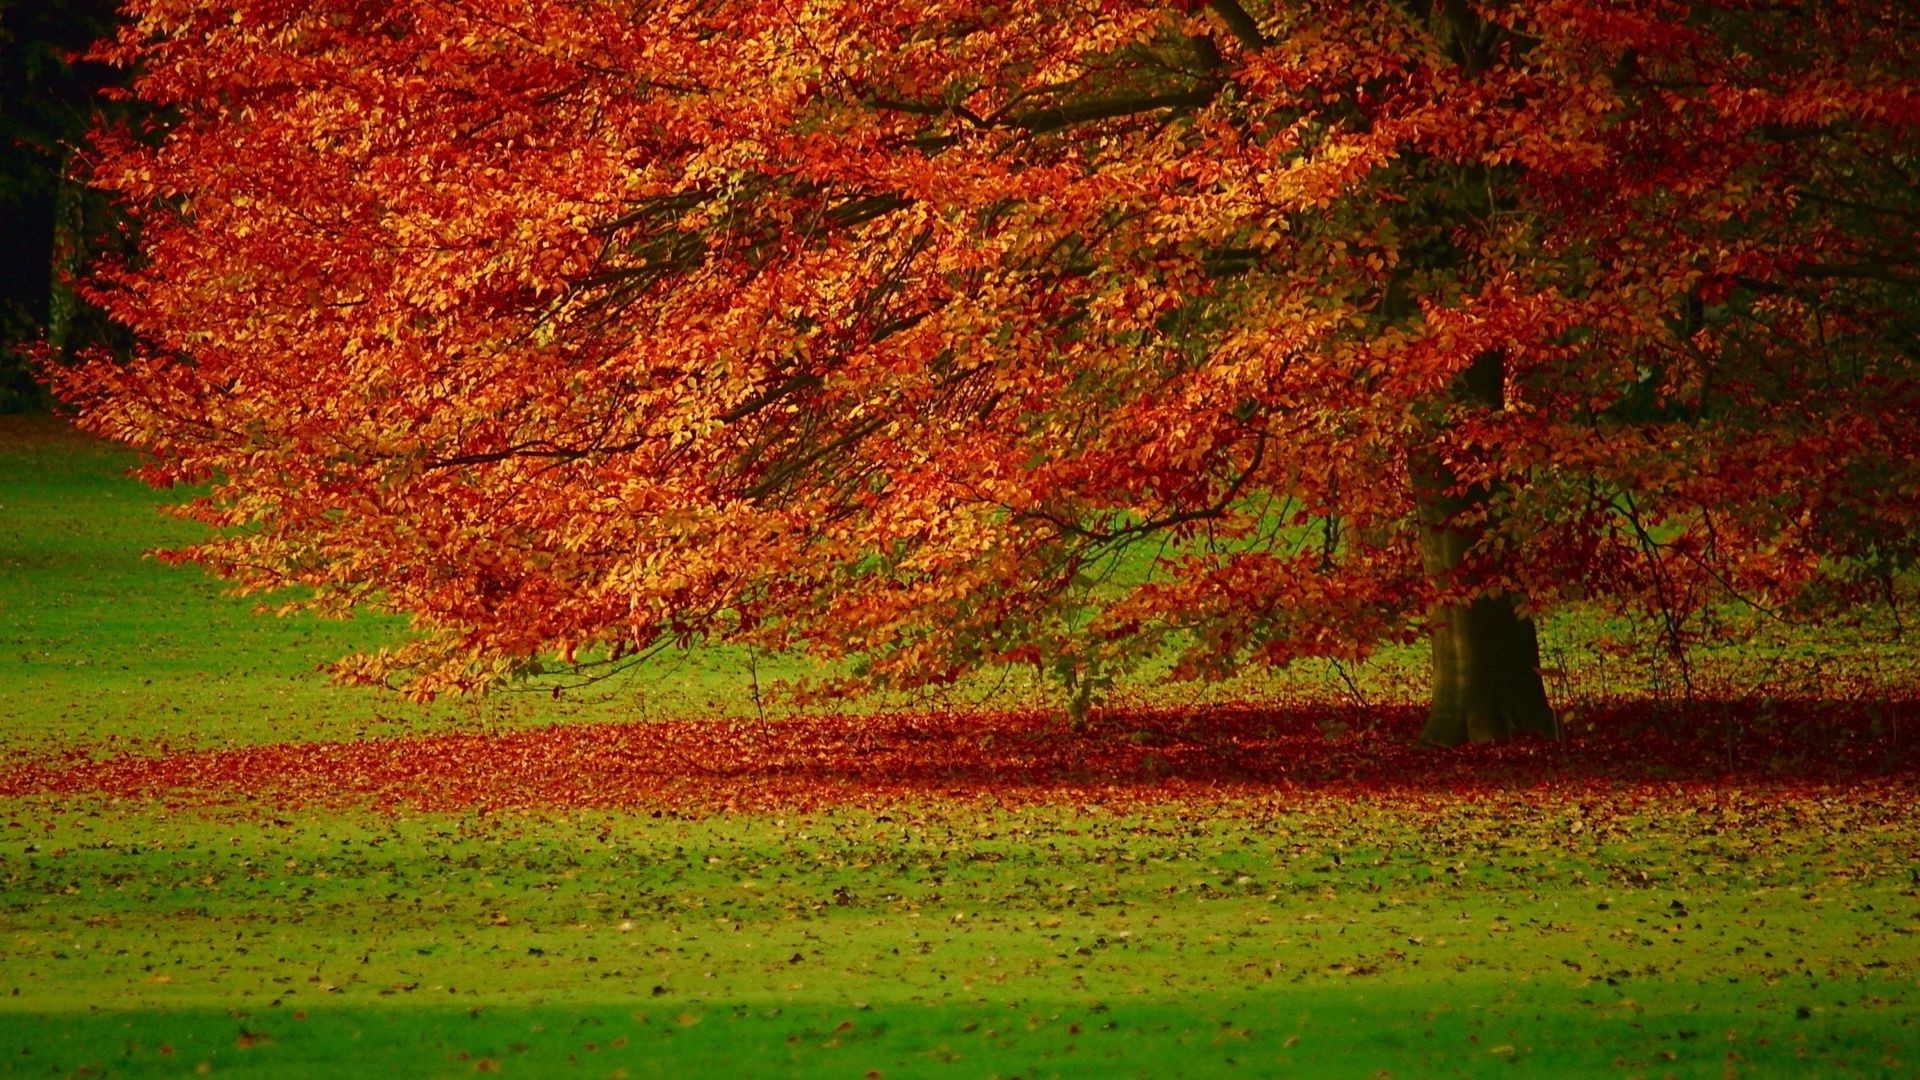 деревья осень лист дерево пейзаж сезон природа цвет сельских яркий рабочего стола сельской местности древесины парк на открытом воздухе